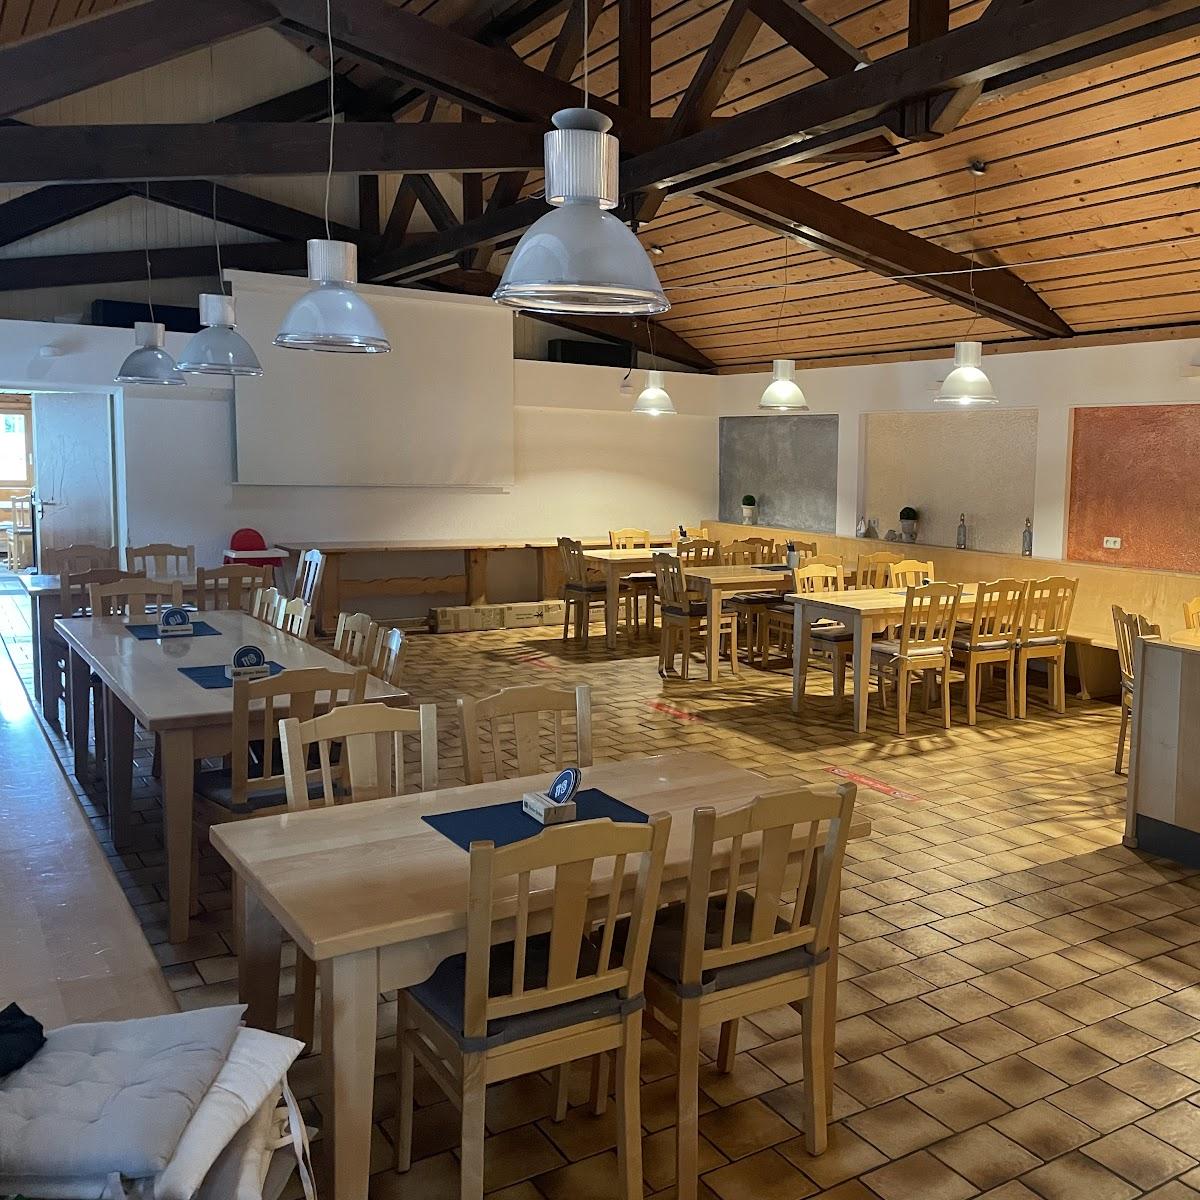 Restaurant "Gaststätte Clubhouse" in Planegg